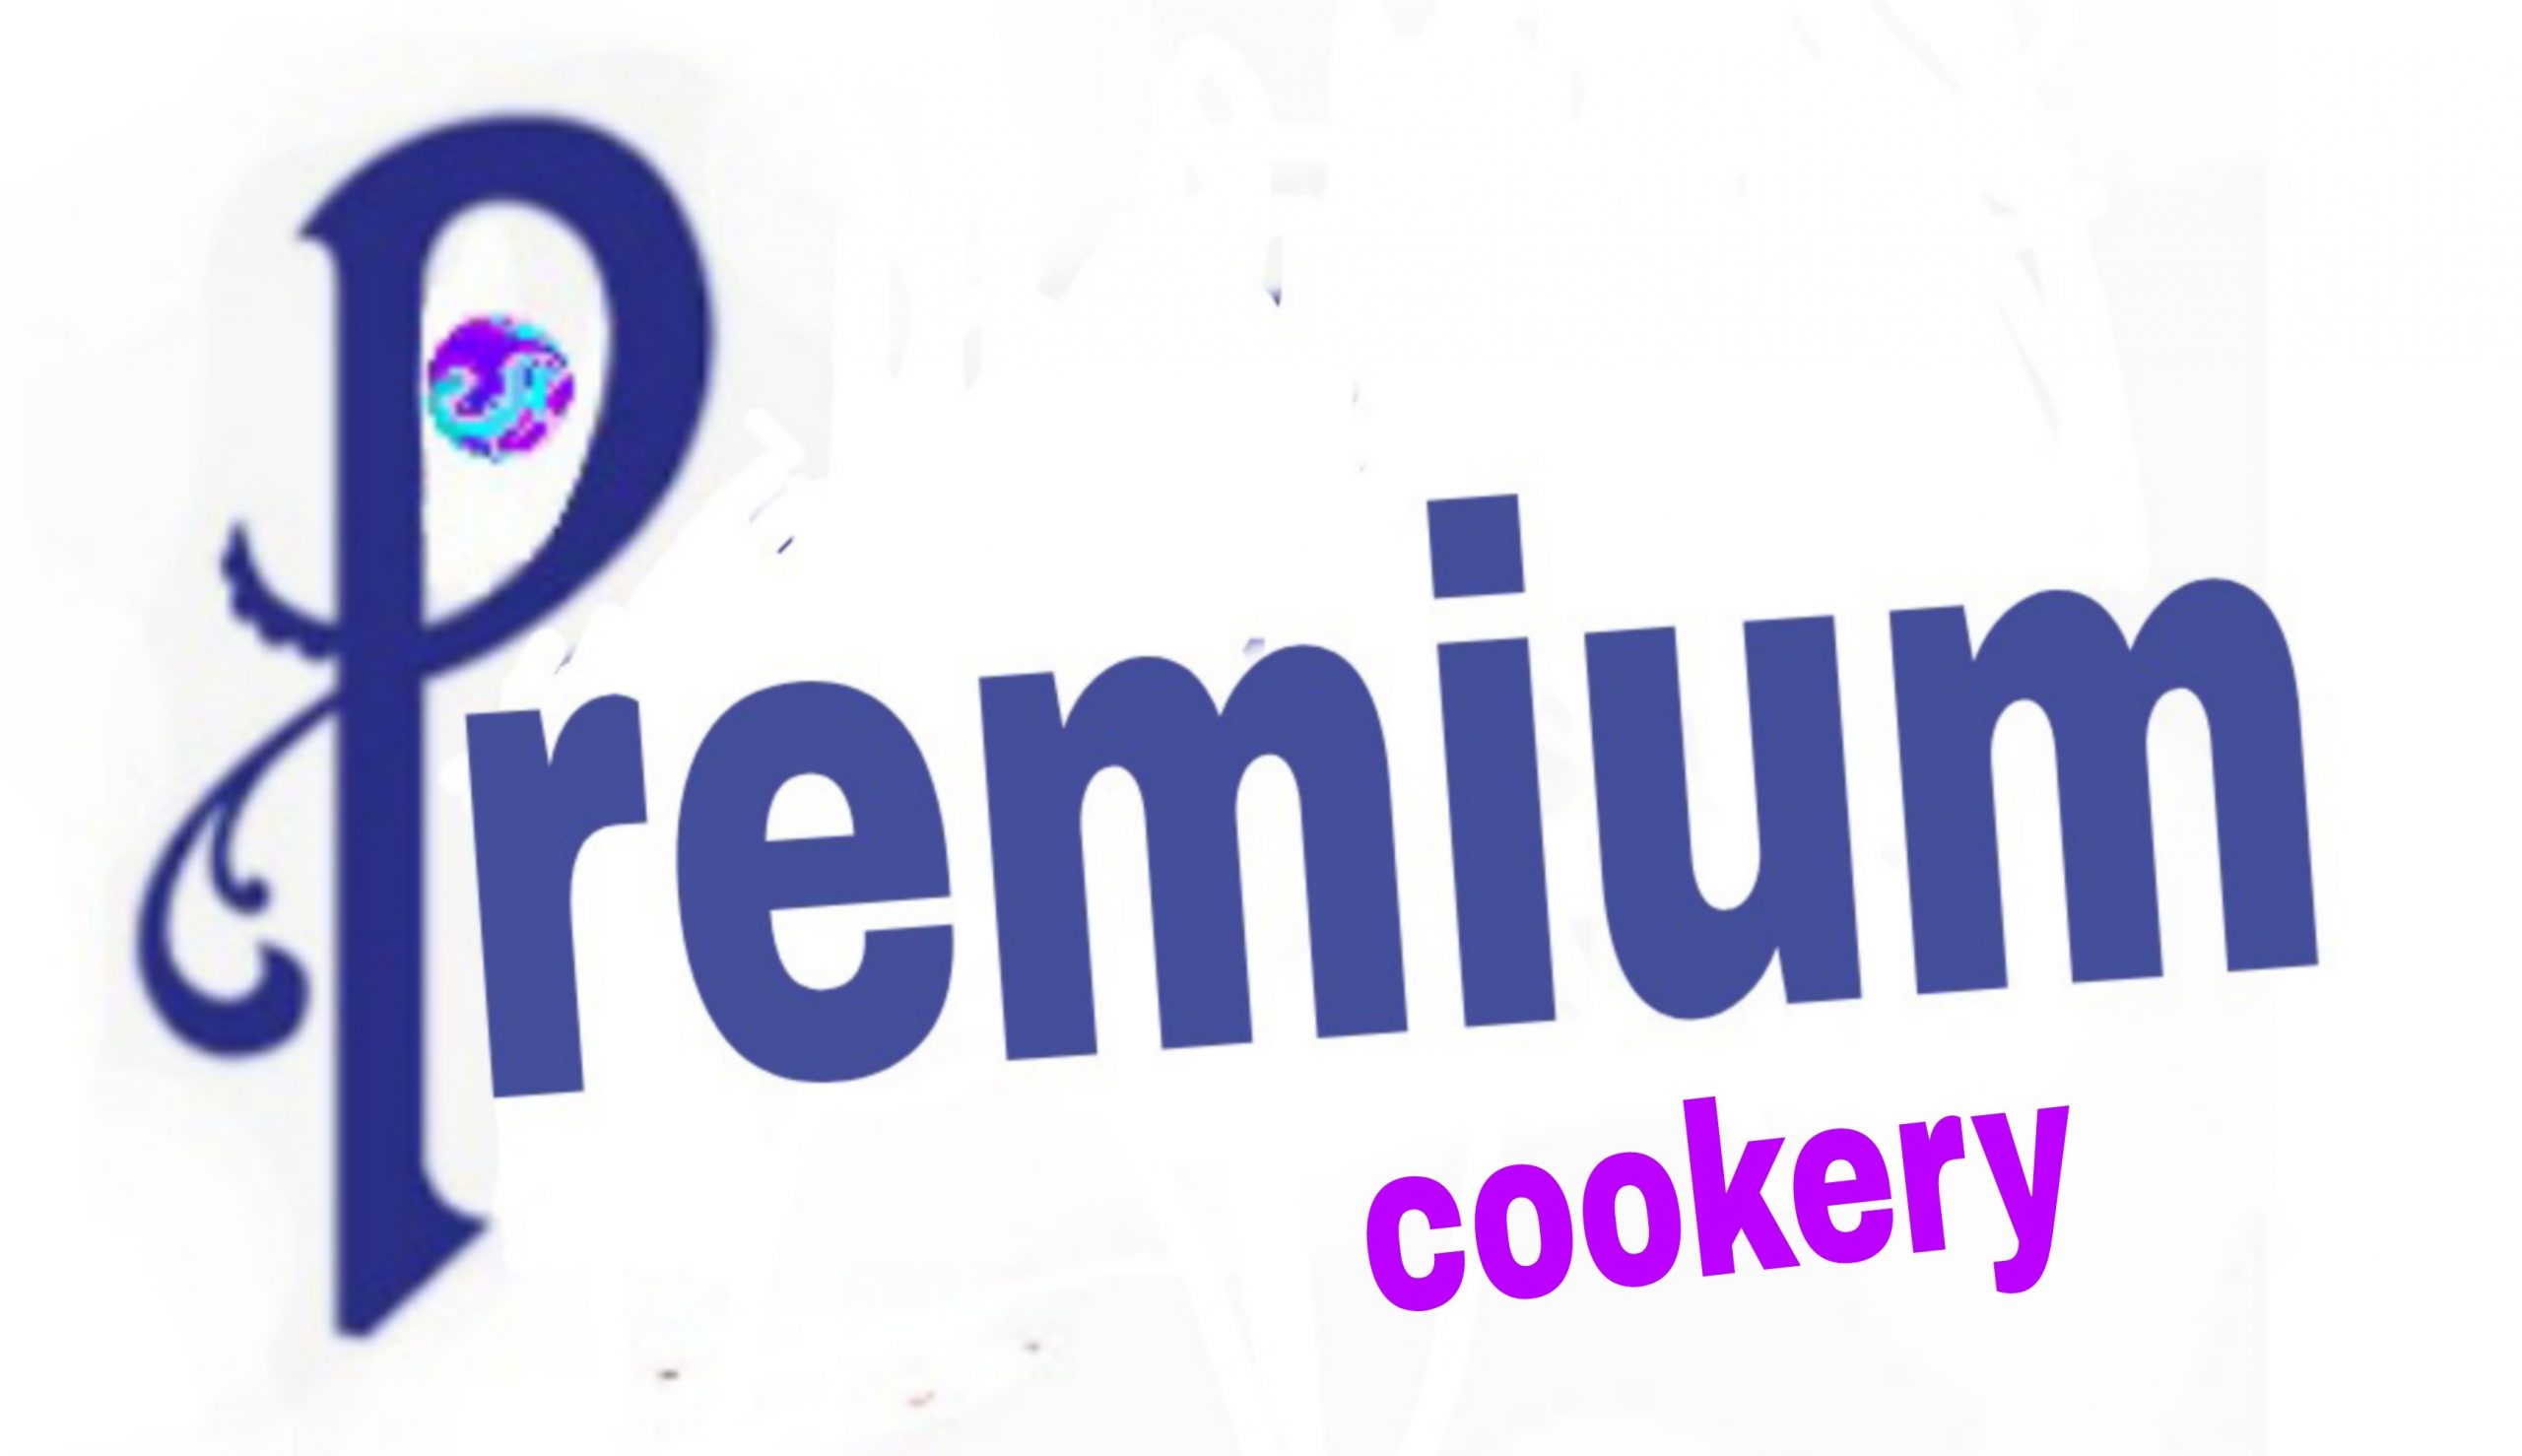 Premium cookery